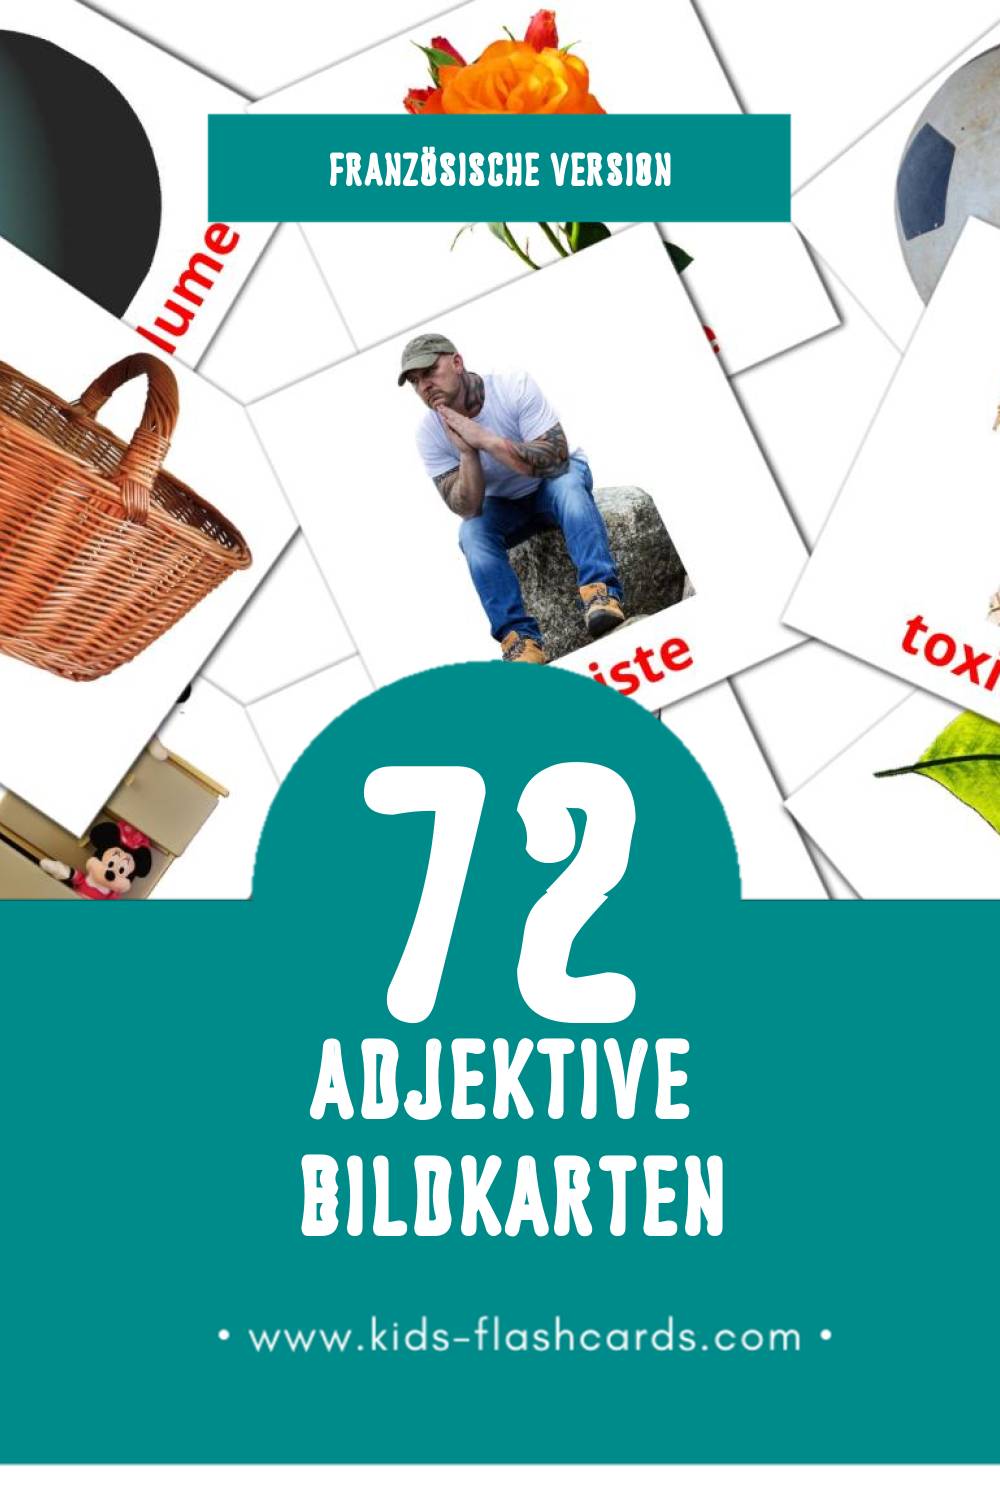 Visual Adjectifs Flashcards für Kleinkinder (74 Karten in Französisch)